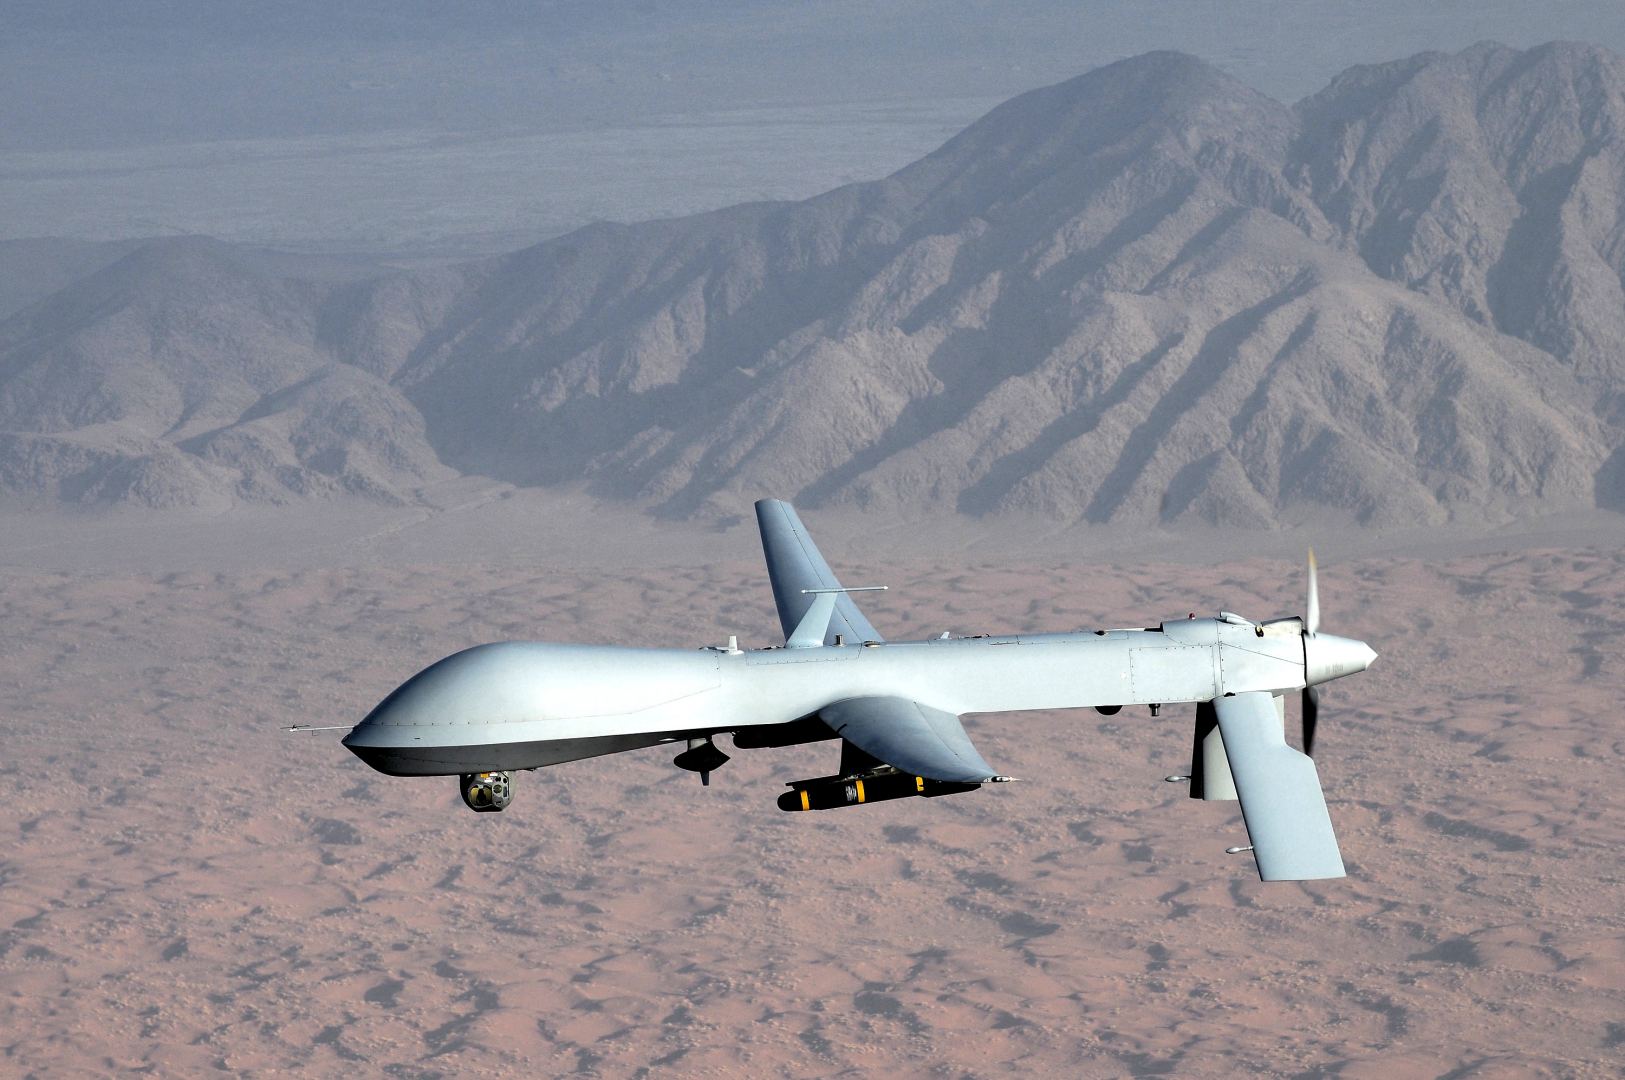 Uzbekistan plans to assemble drones